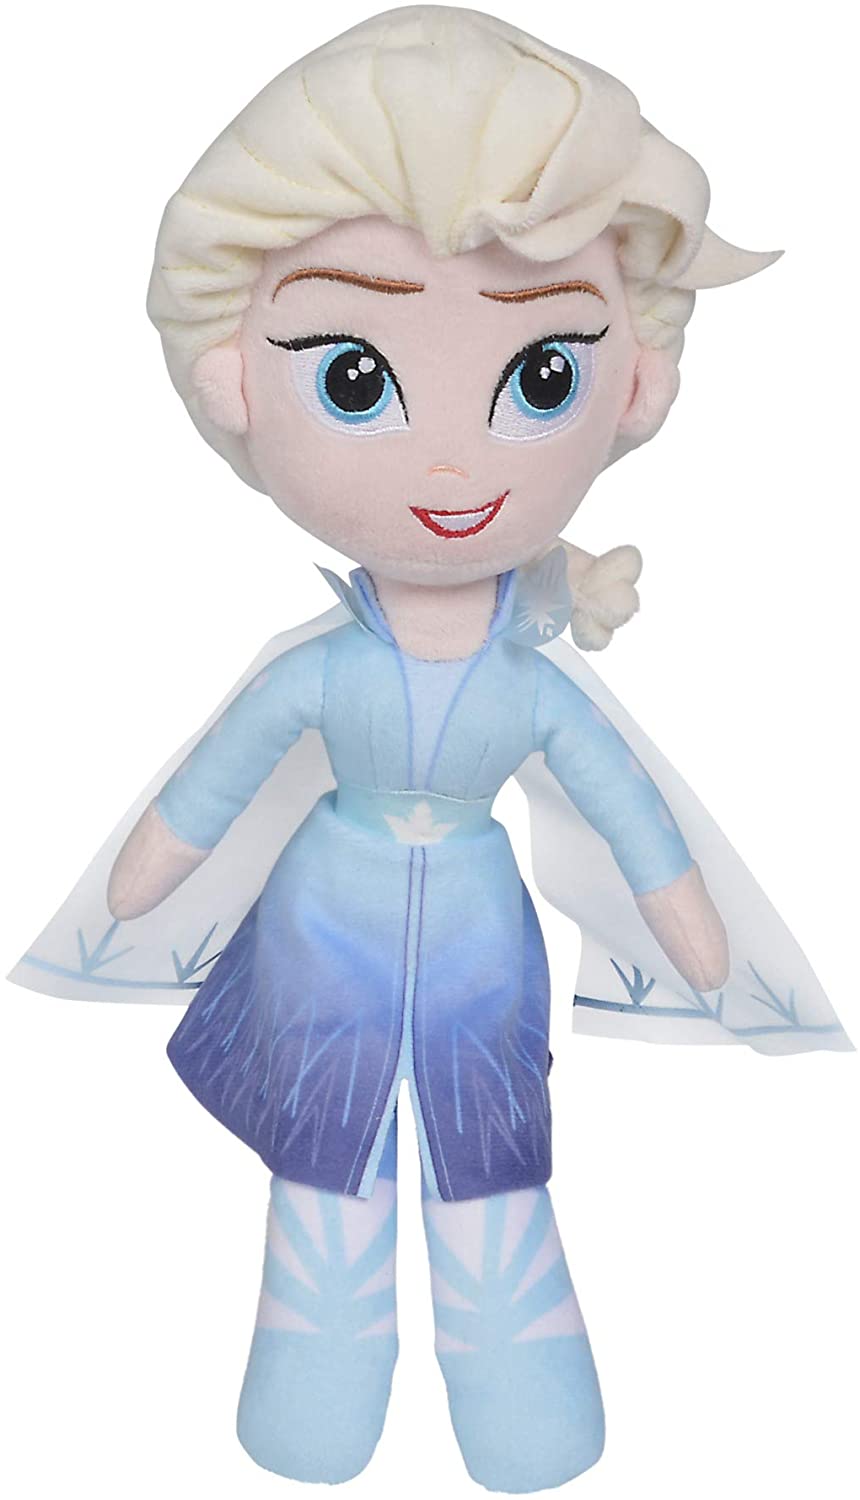 Disney - Elsa-Plüschtier im Friends-Stil - 25 cm 6315877640